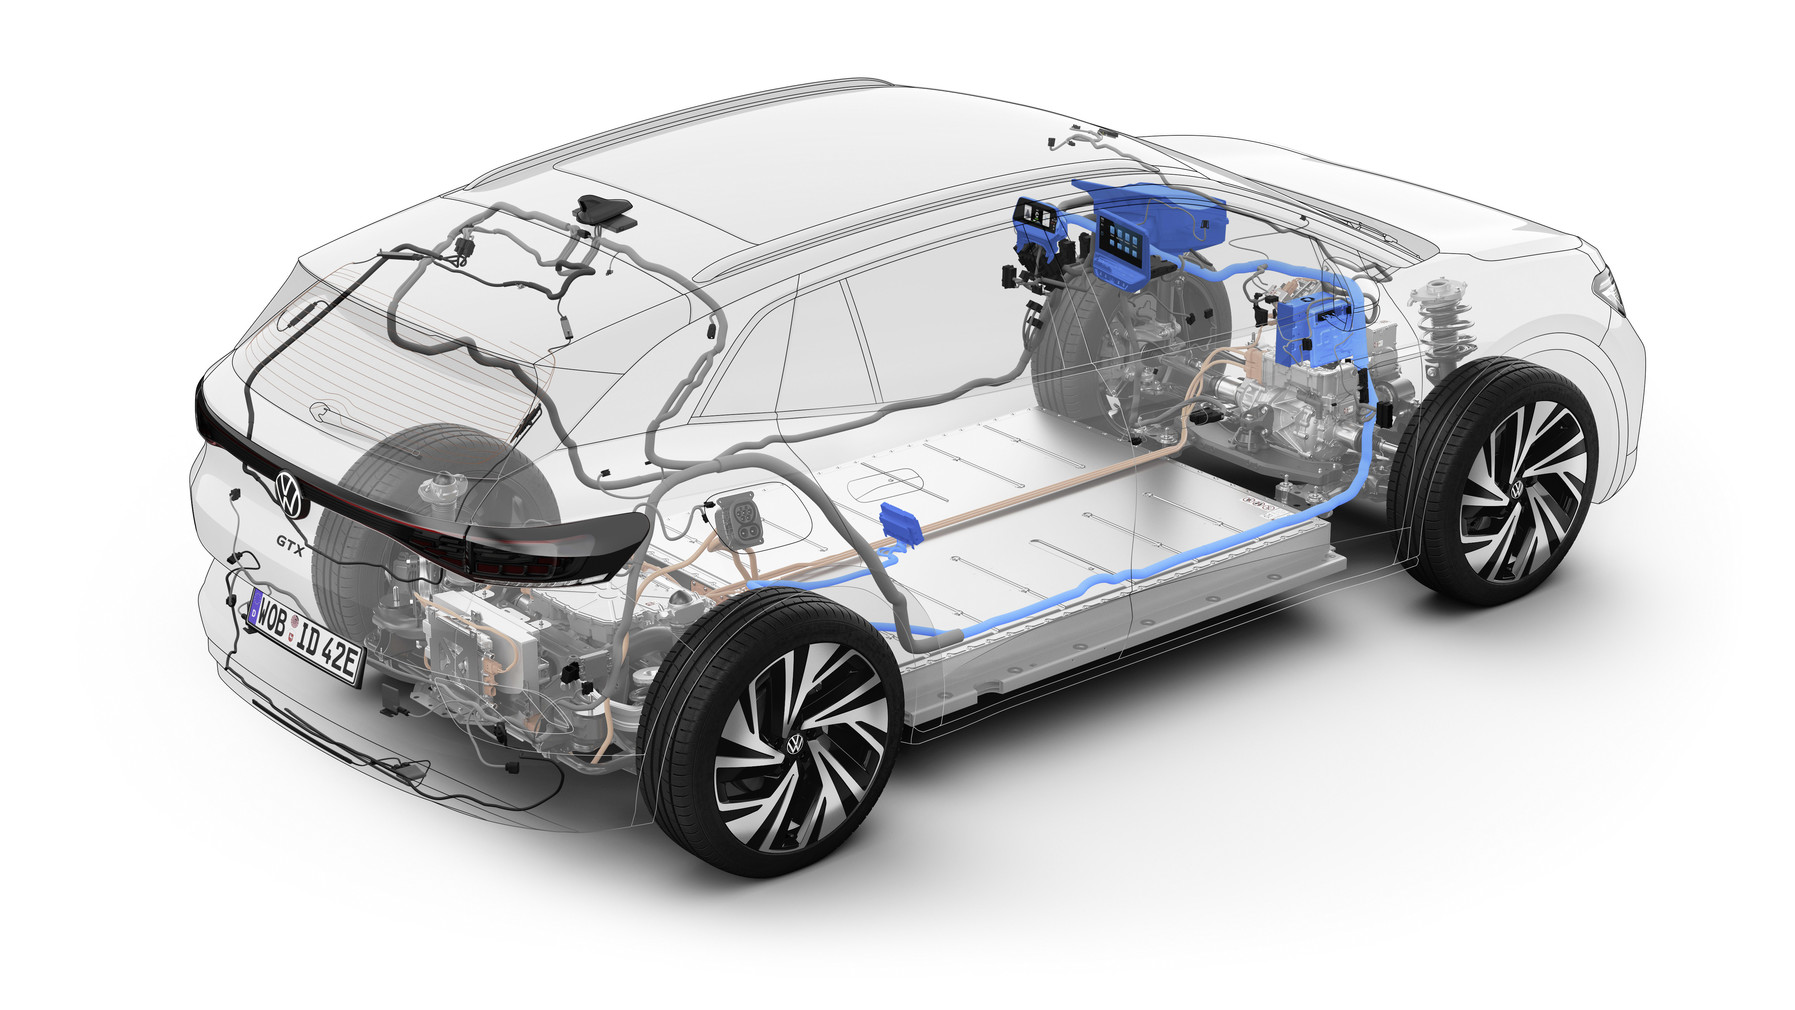 Softwareorientierter Mobilitätsanbieter – Volkswagen startet Over-the-Air Updates für die ID. Familie